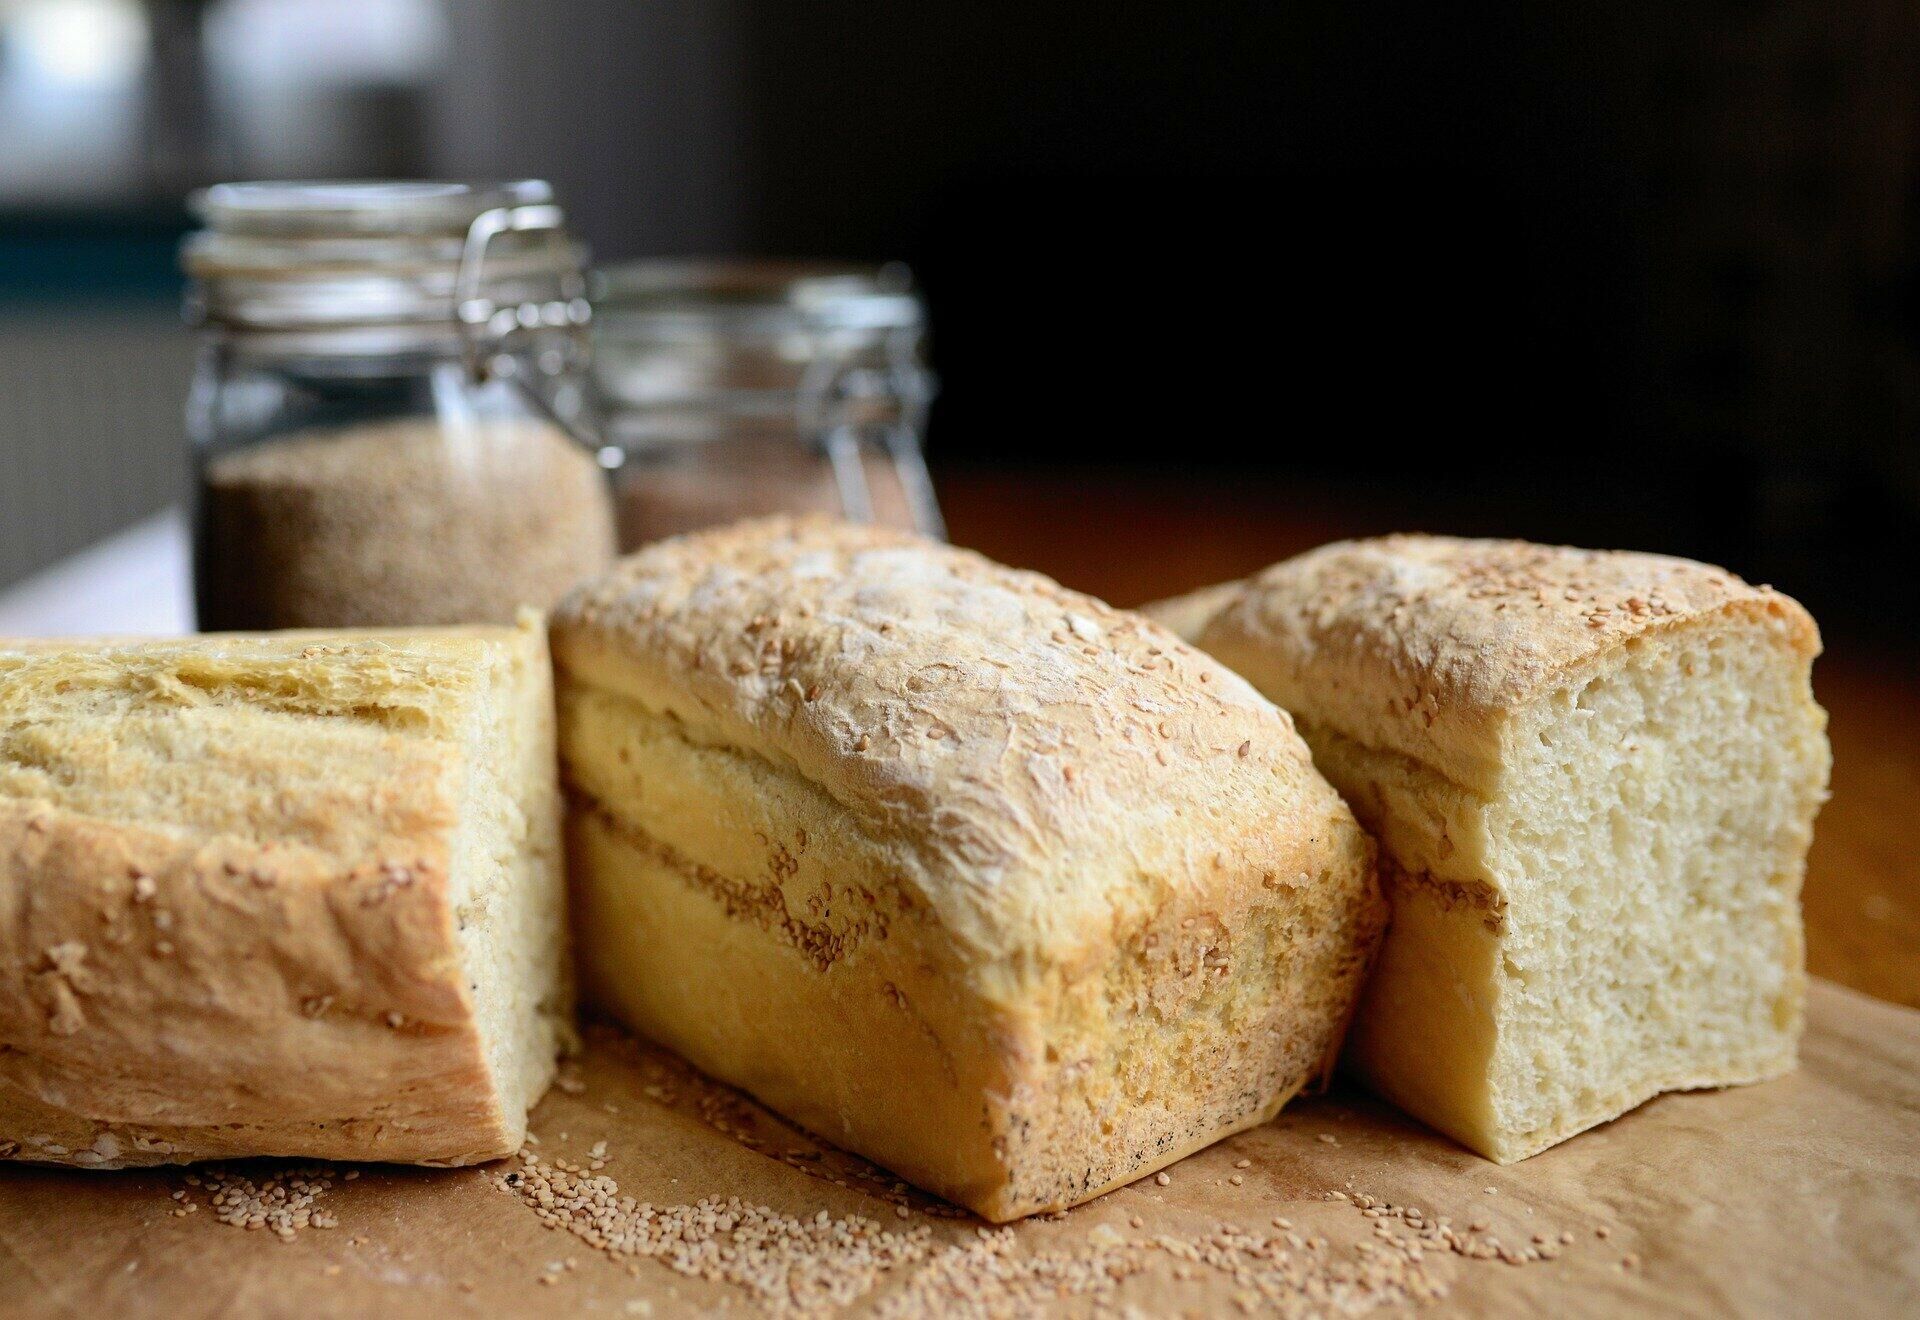 Домашний хлеб в духовке: простой рецепт воздушной выпечки